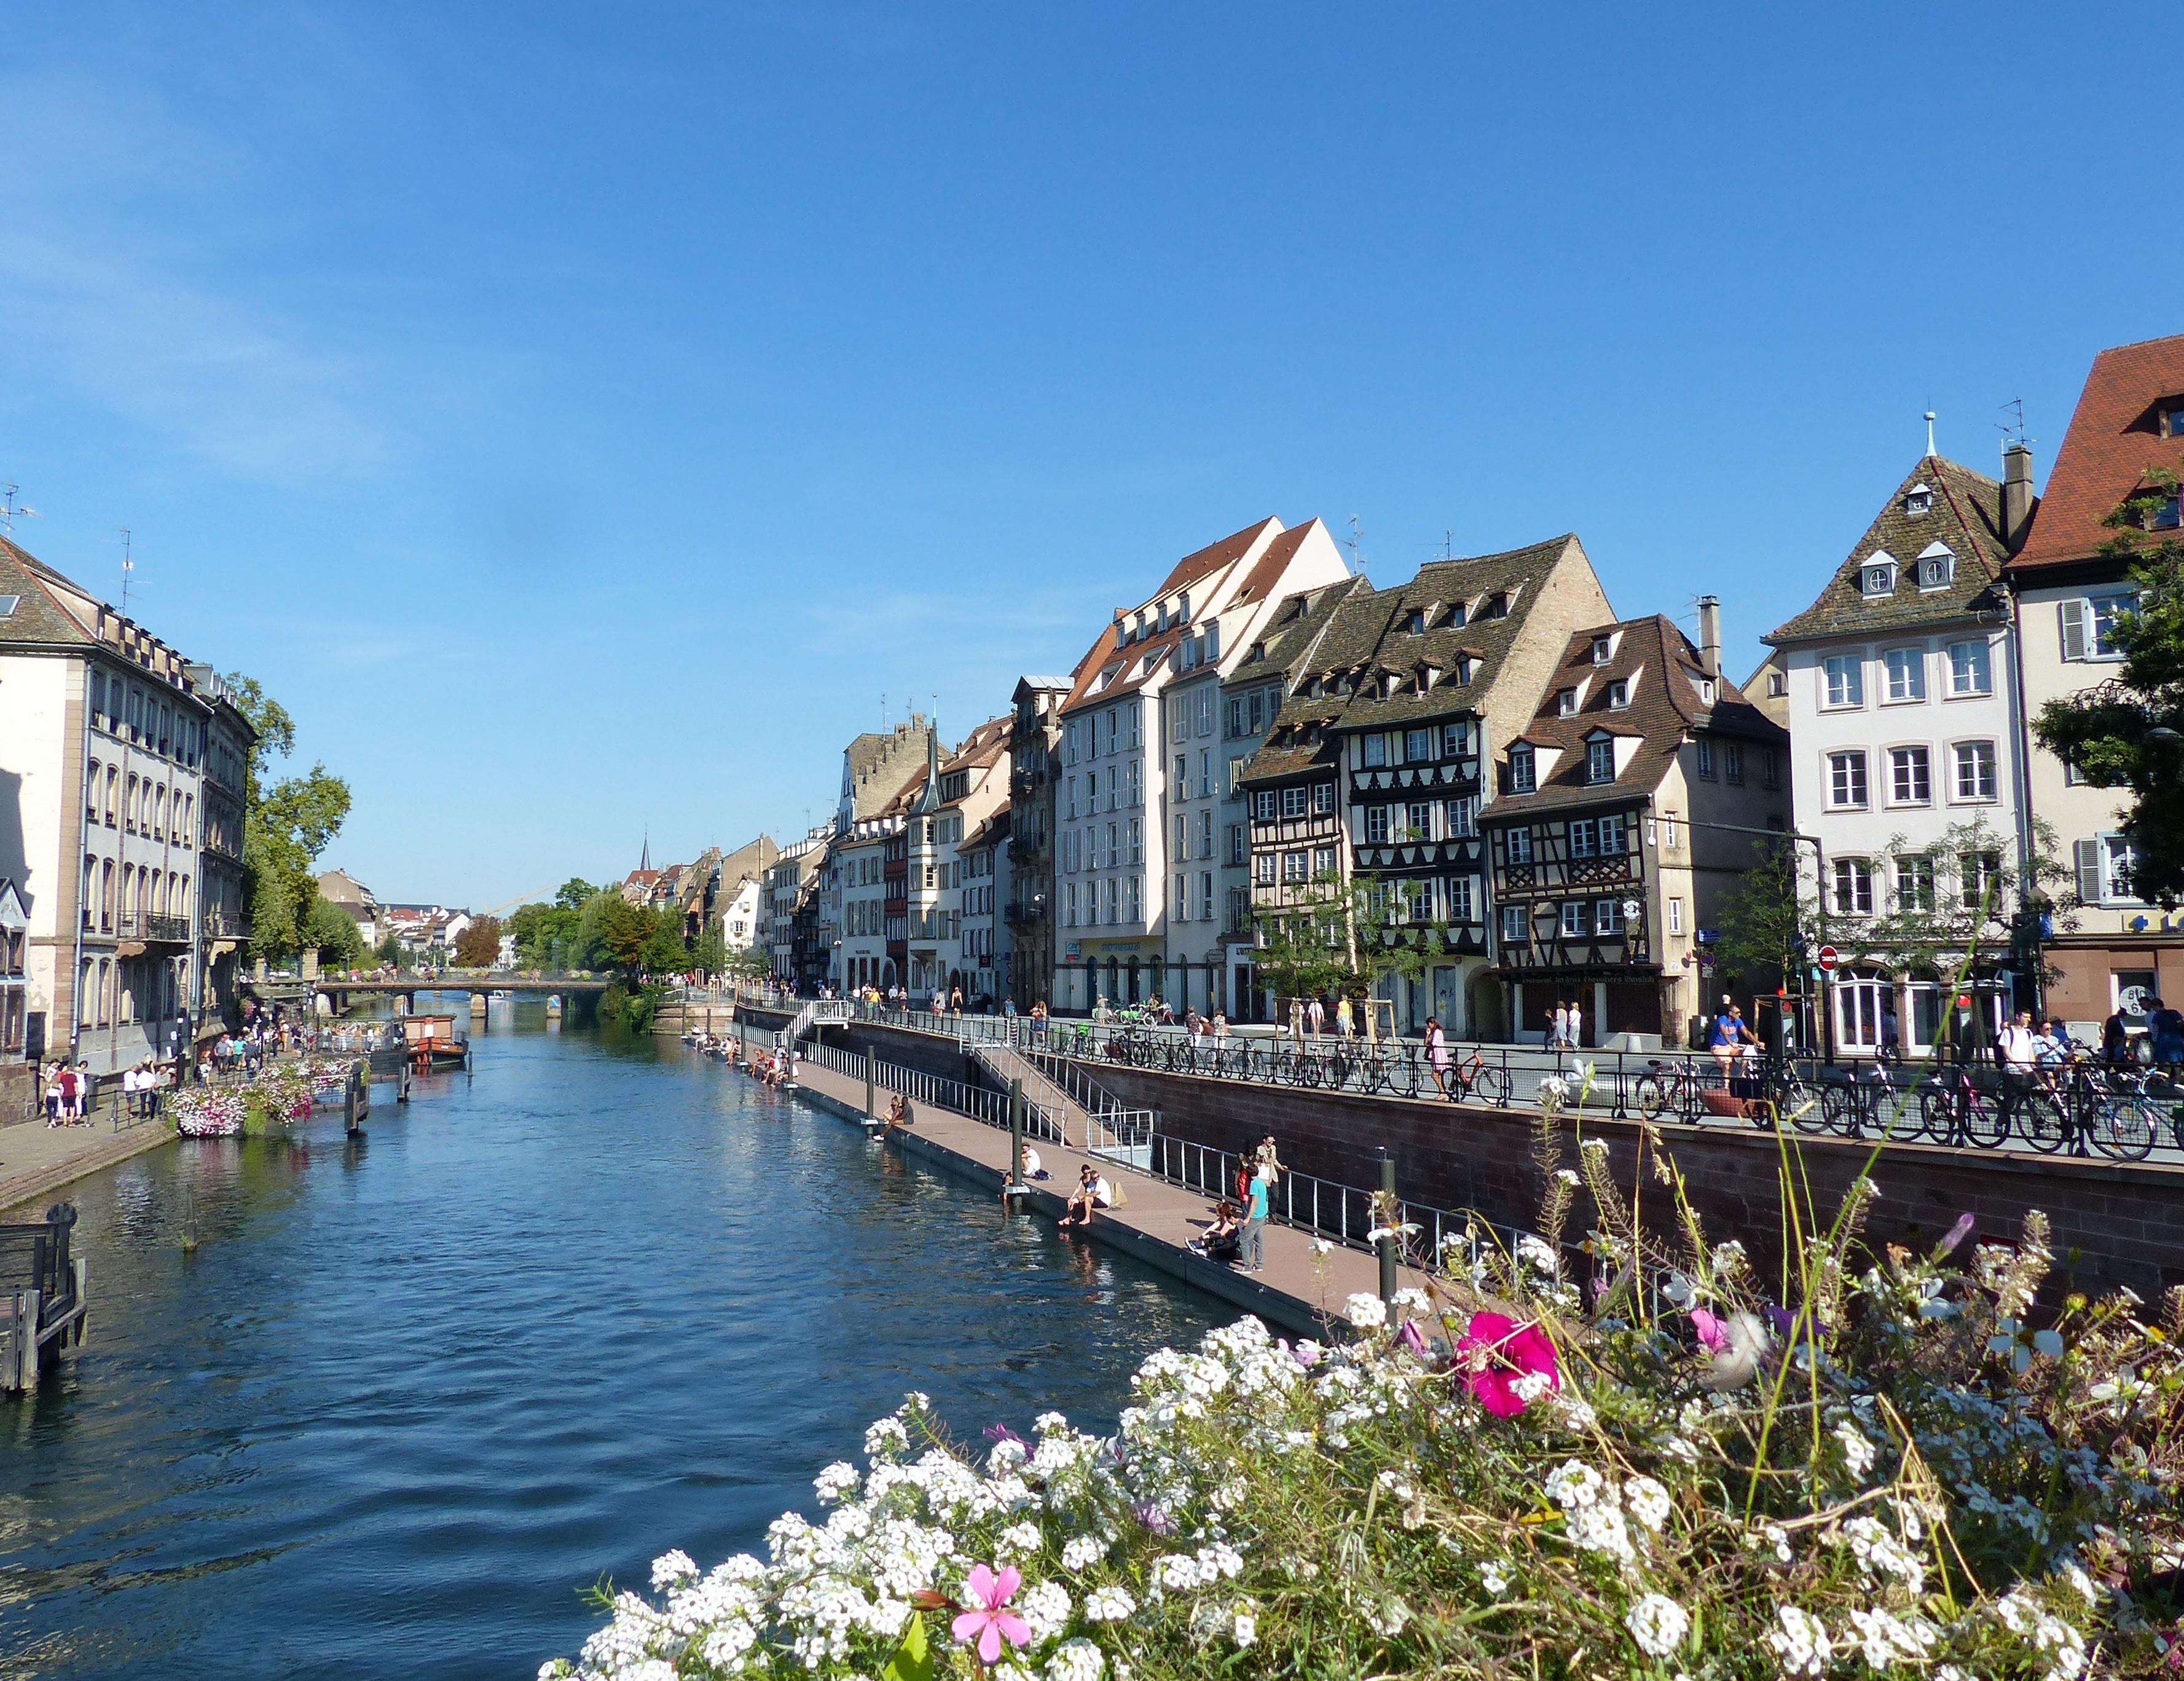 Straßbourg - Schöne Stadt mit viel Flair #travelchallenge #städtetrip #staedtetrip #straßbourg 

